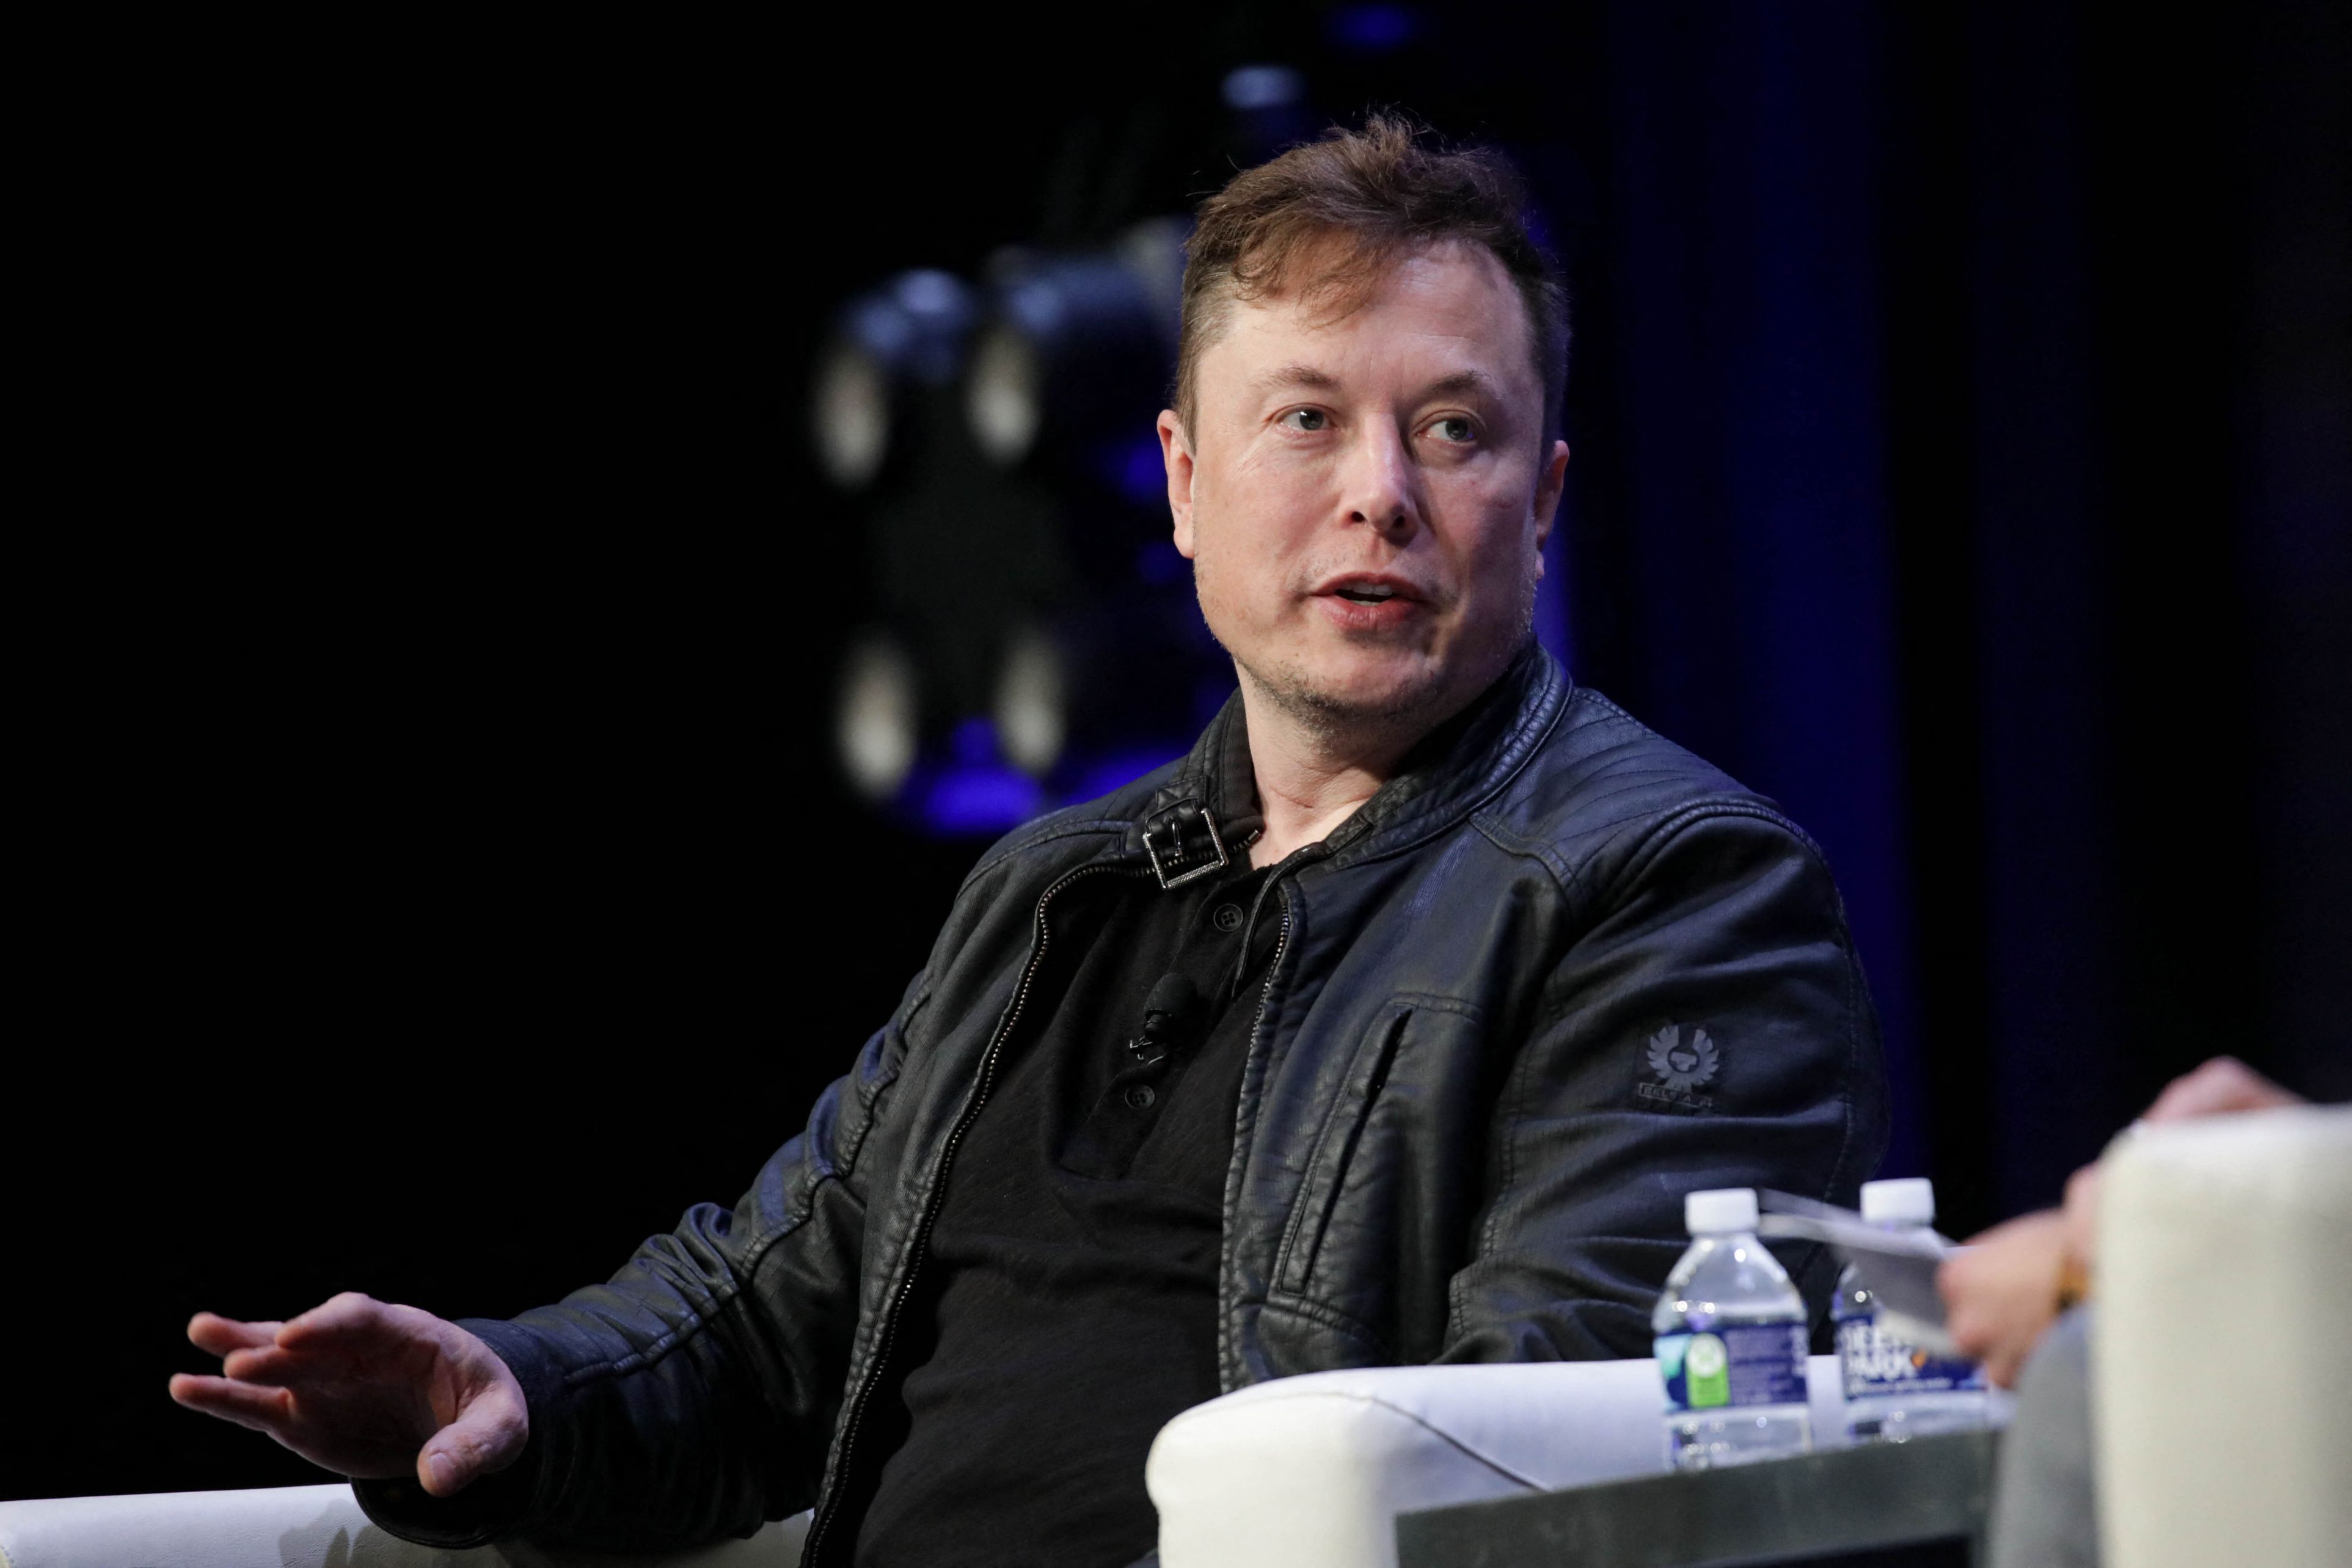 Autorităţile americane au pus ochii pe unul dintre cele mai controversate proiecte ale lui Elon Musk: Compania Neuralink este anchetată în legătură cu testele pe animale